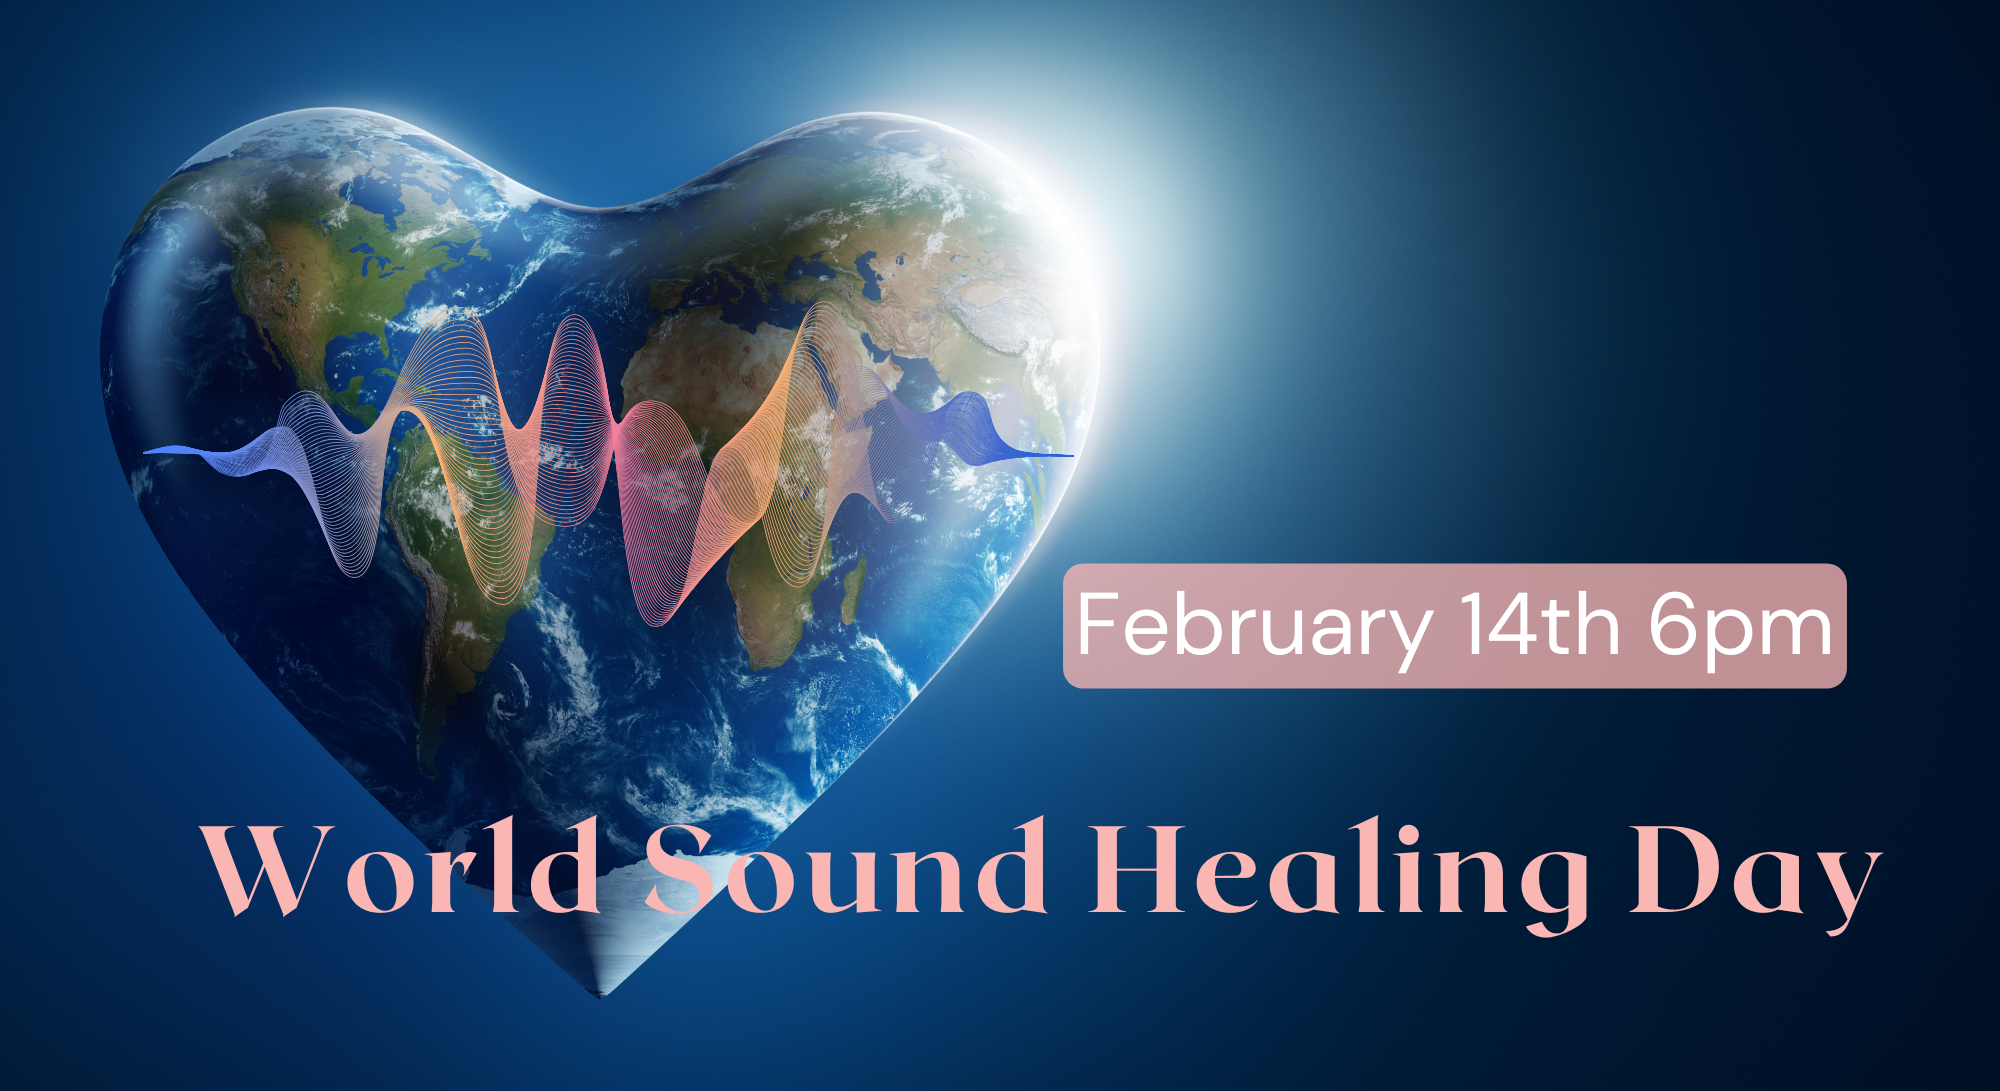 World Sound Healing Day Sound Bath